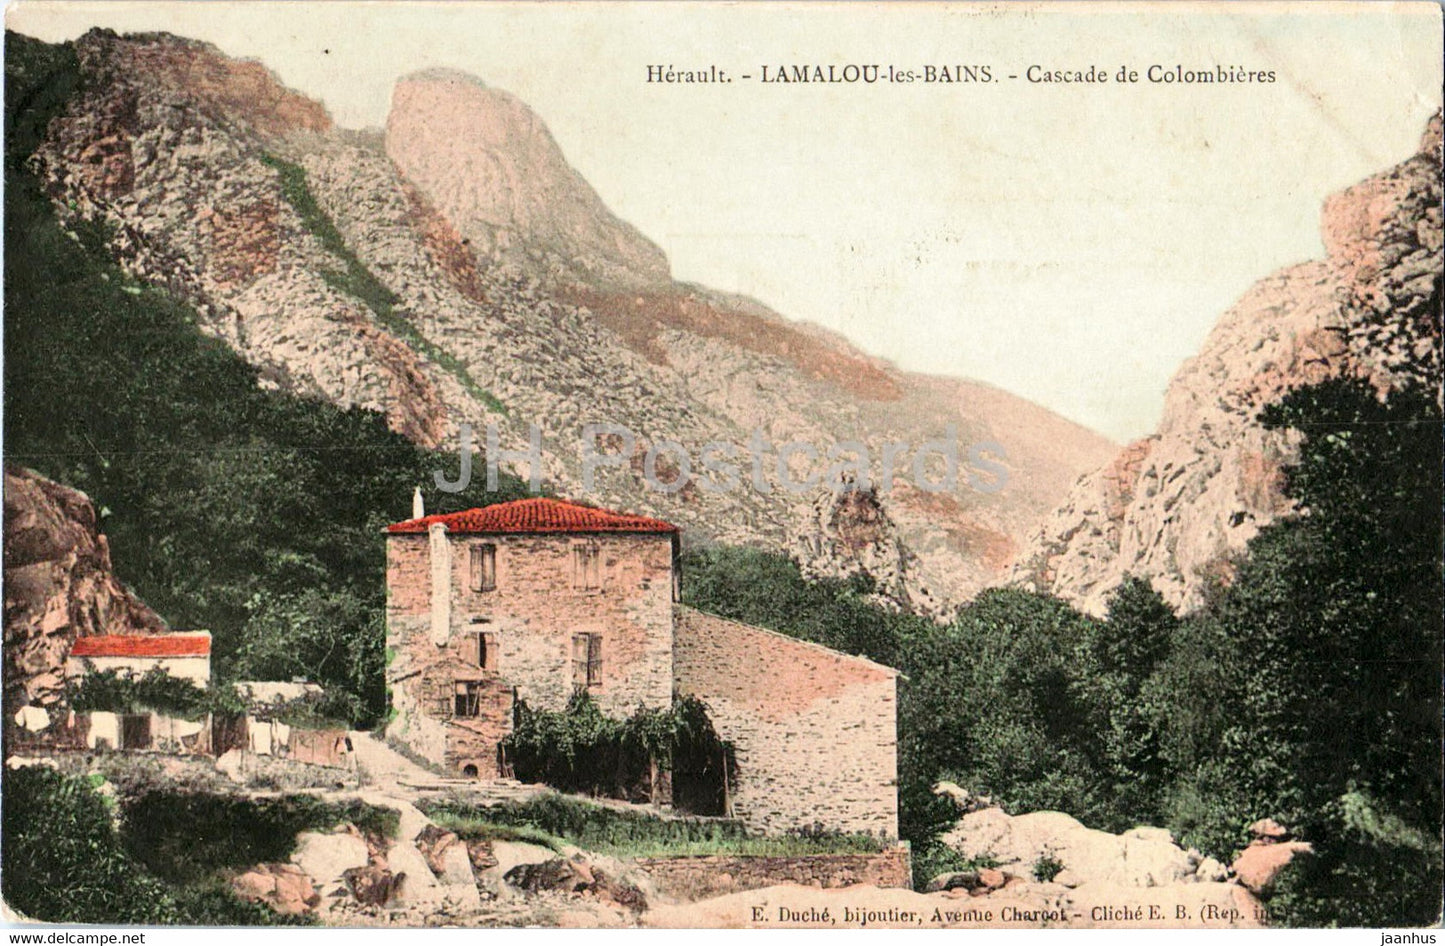 Lamalou les Bains - Cascade de Colombieres - old postcard - 1921 - France - used - JH Postcards